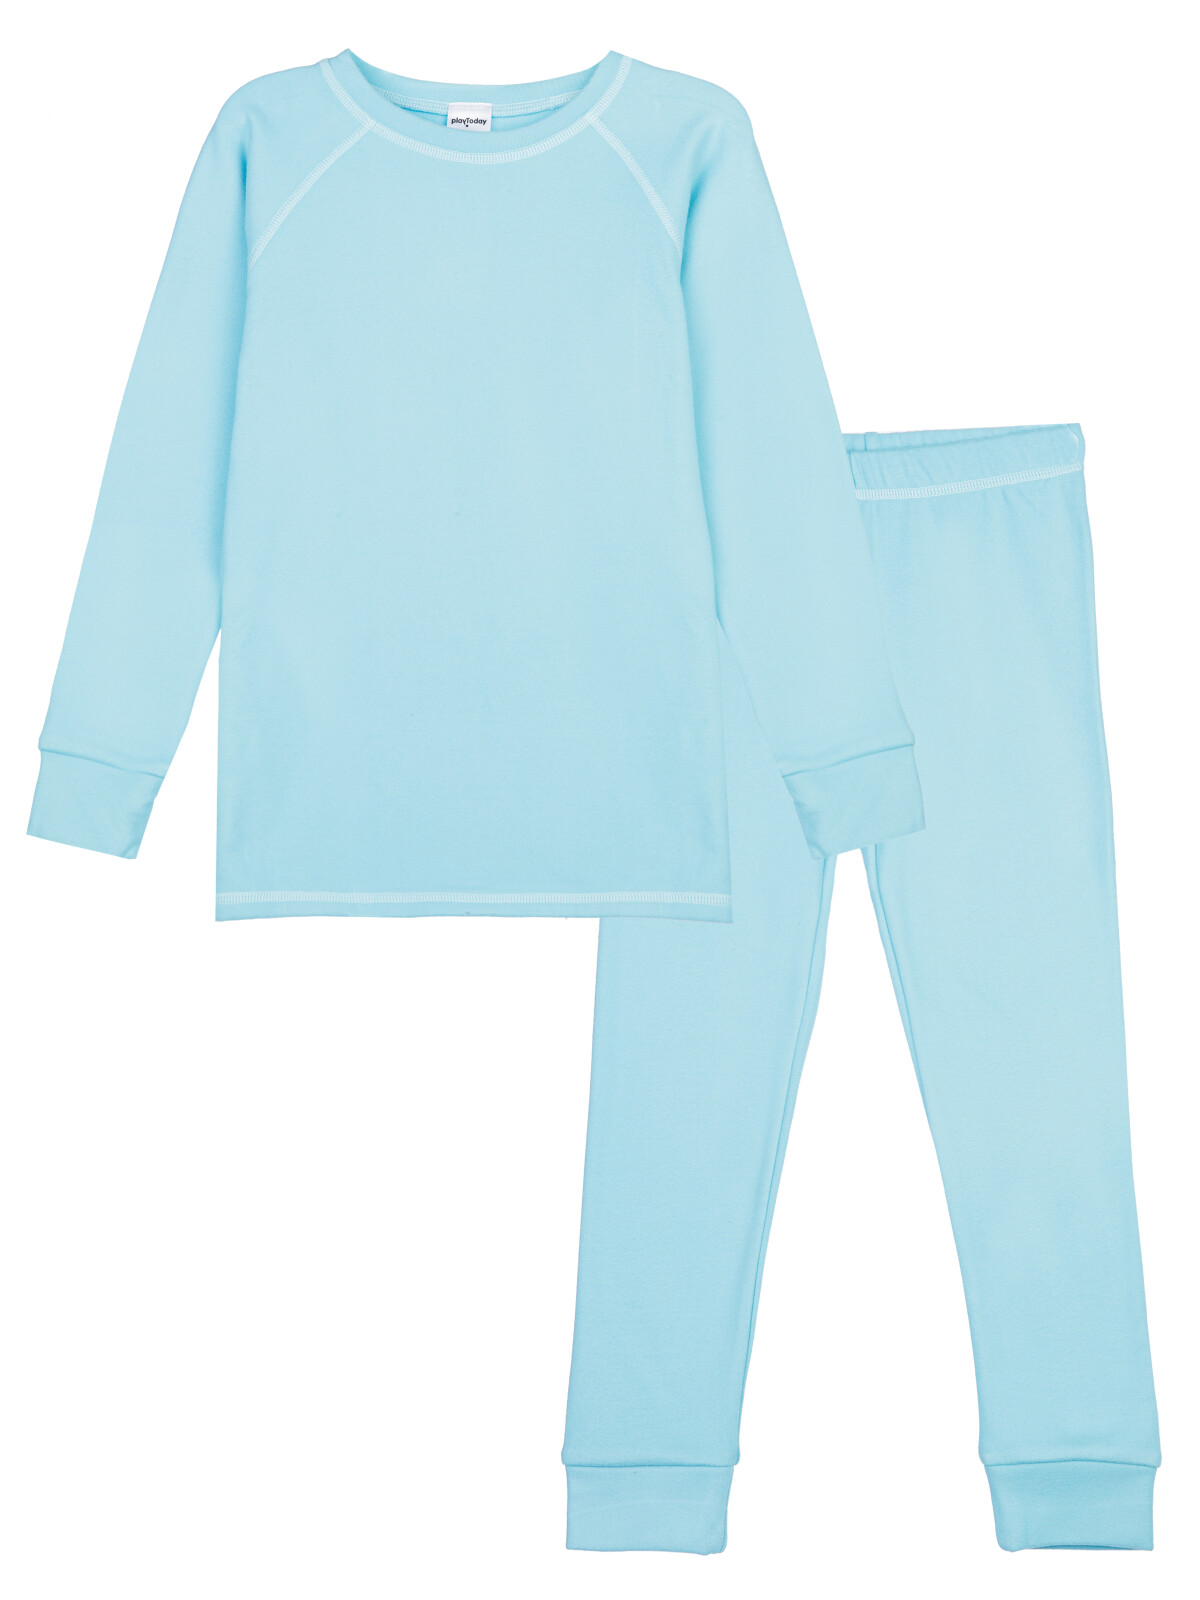 Термокомплект для девочек PlayToday: брюки, толстовка, голубой, 104